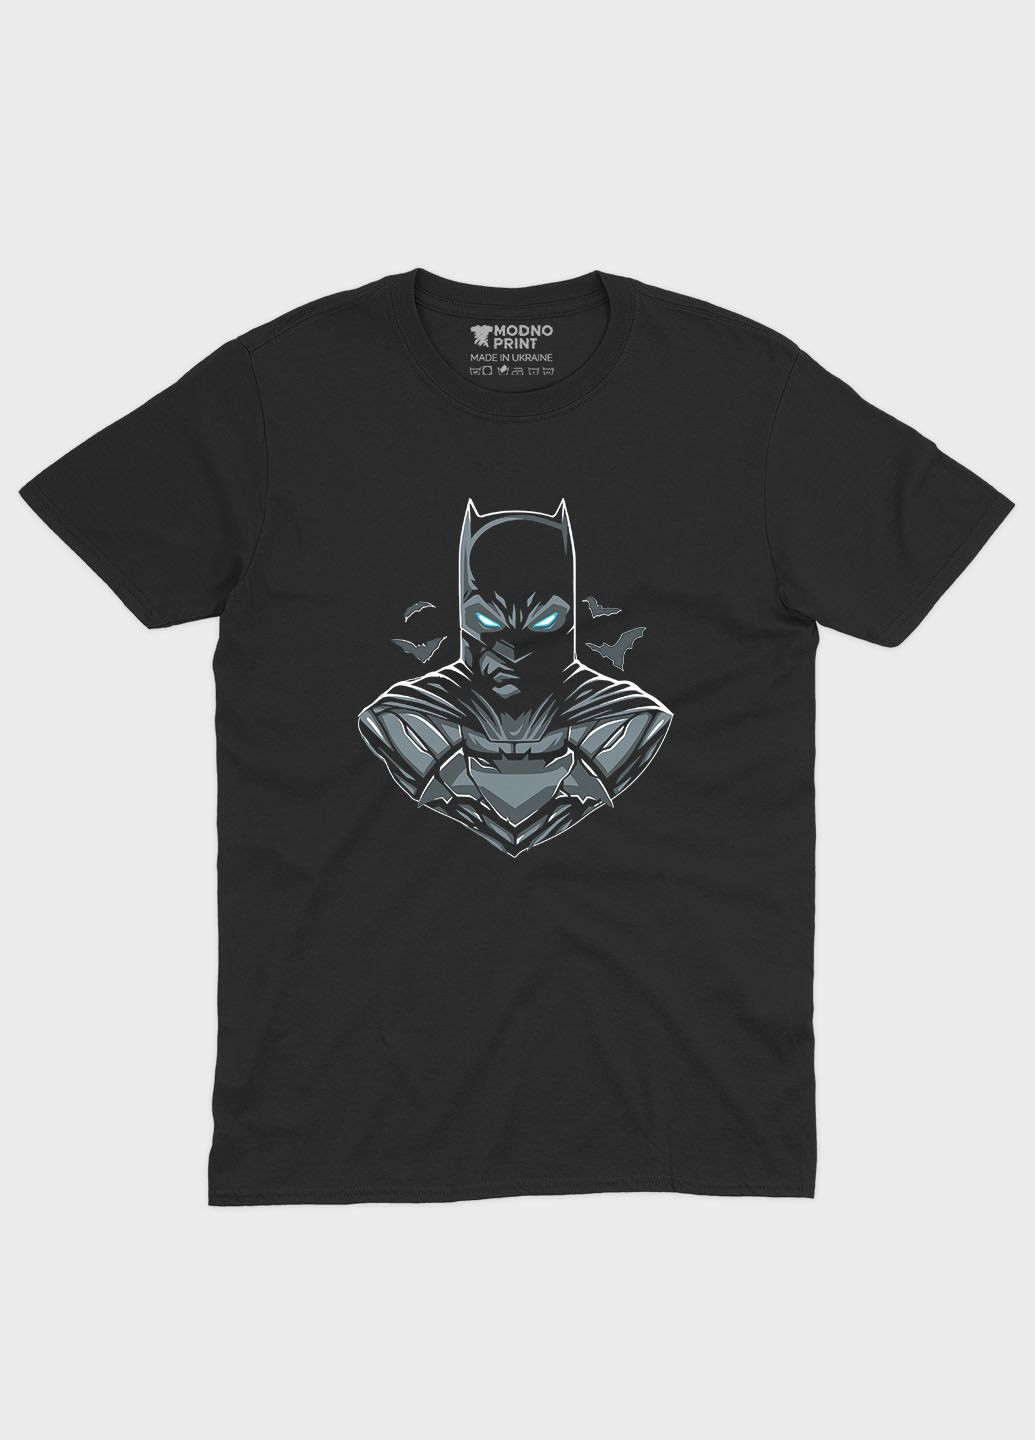 Черная демисезонная футболка для мальчика с принтом супергероя - бэтмен (ts001-1-bl-006-003-045-b) Modno